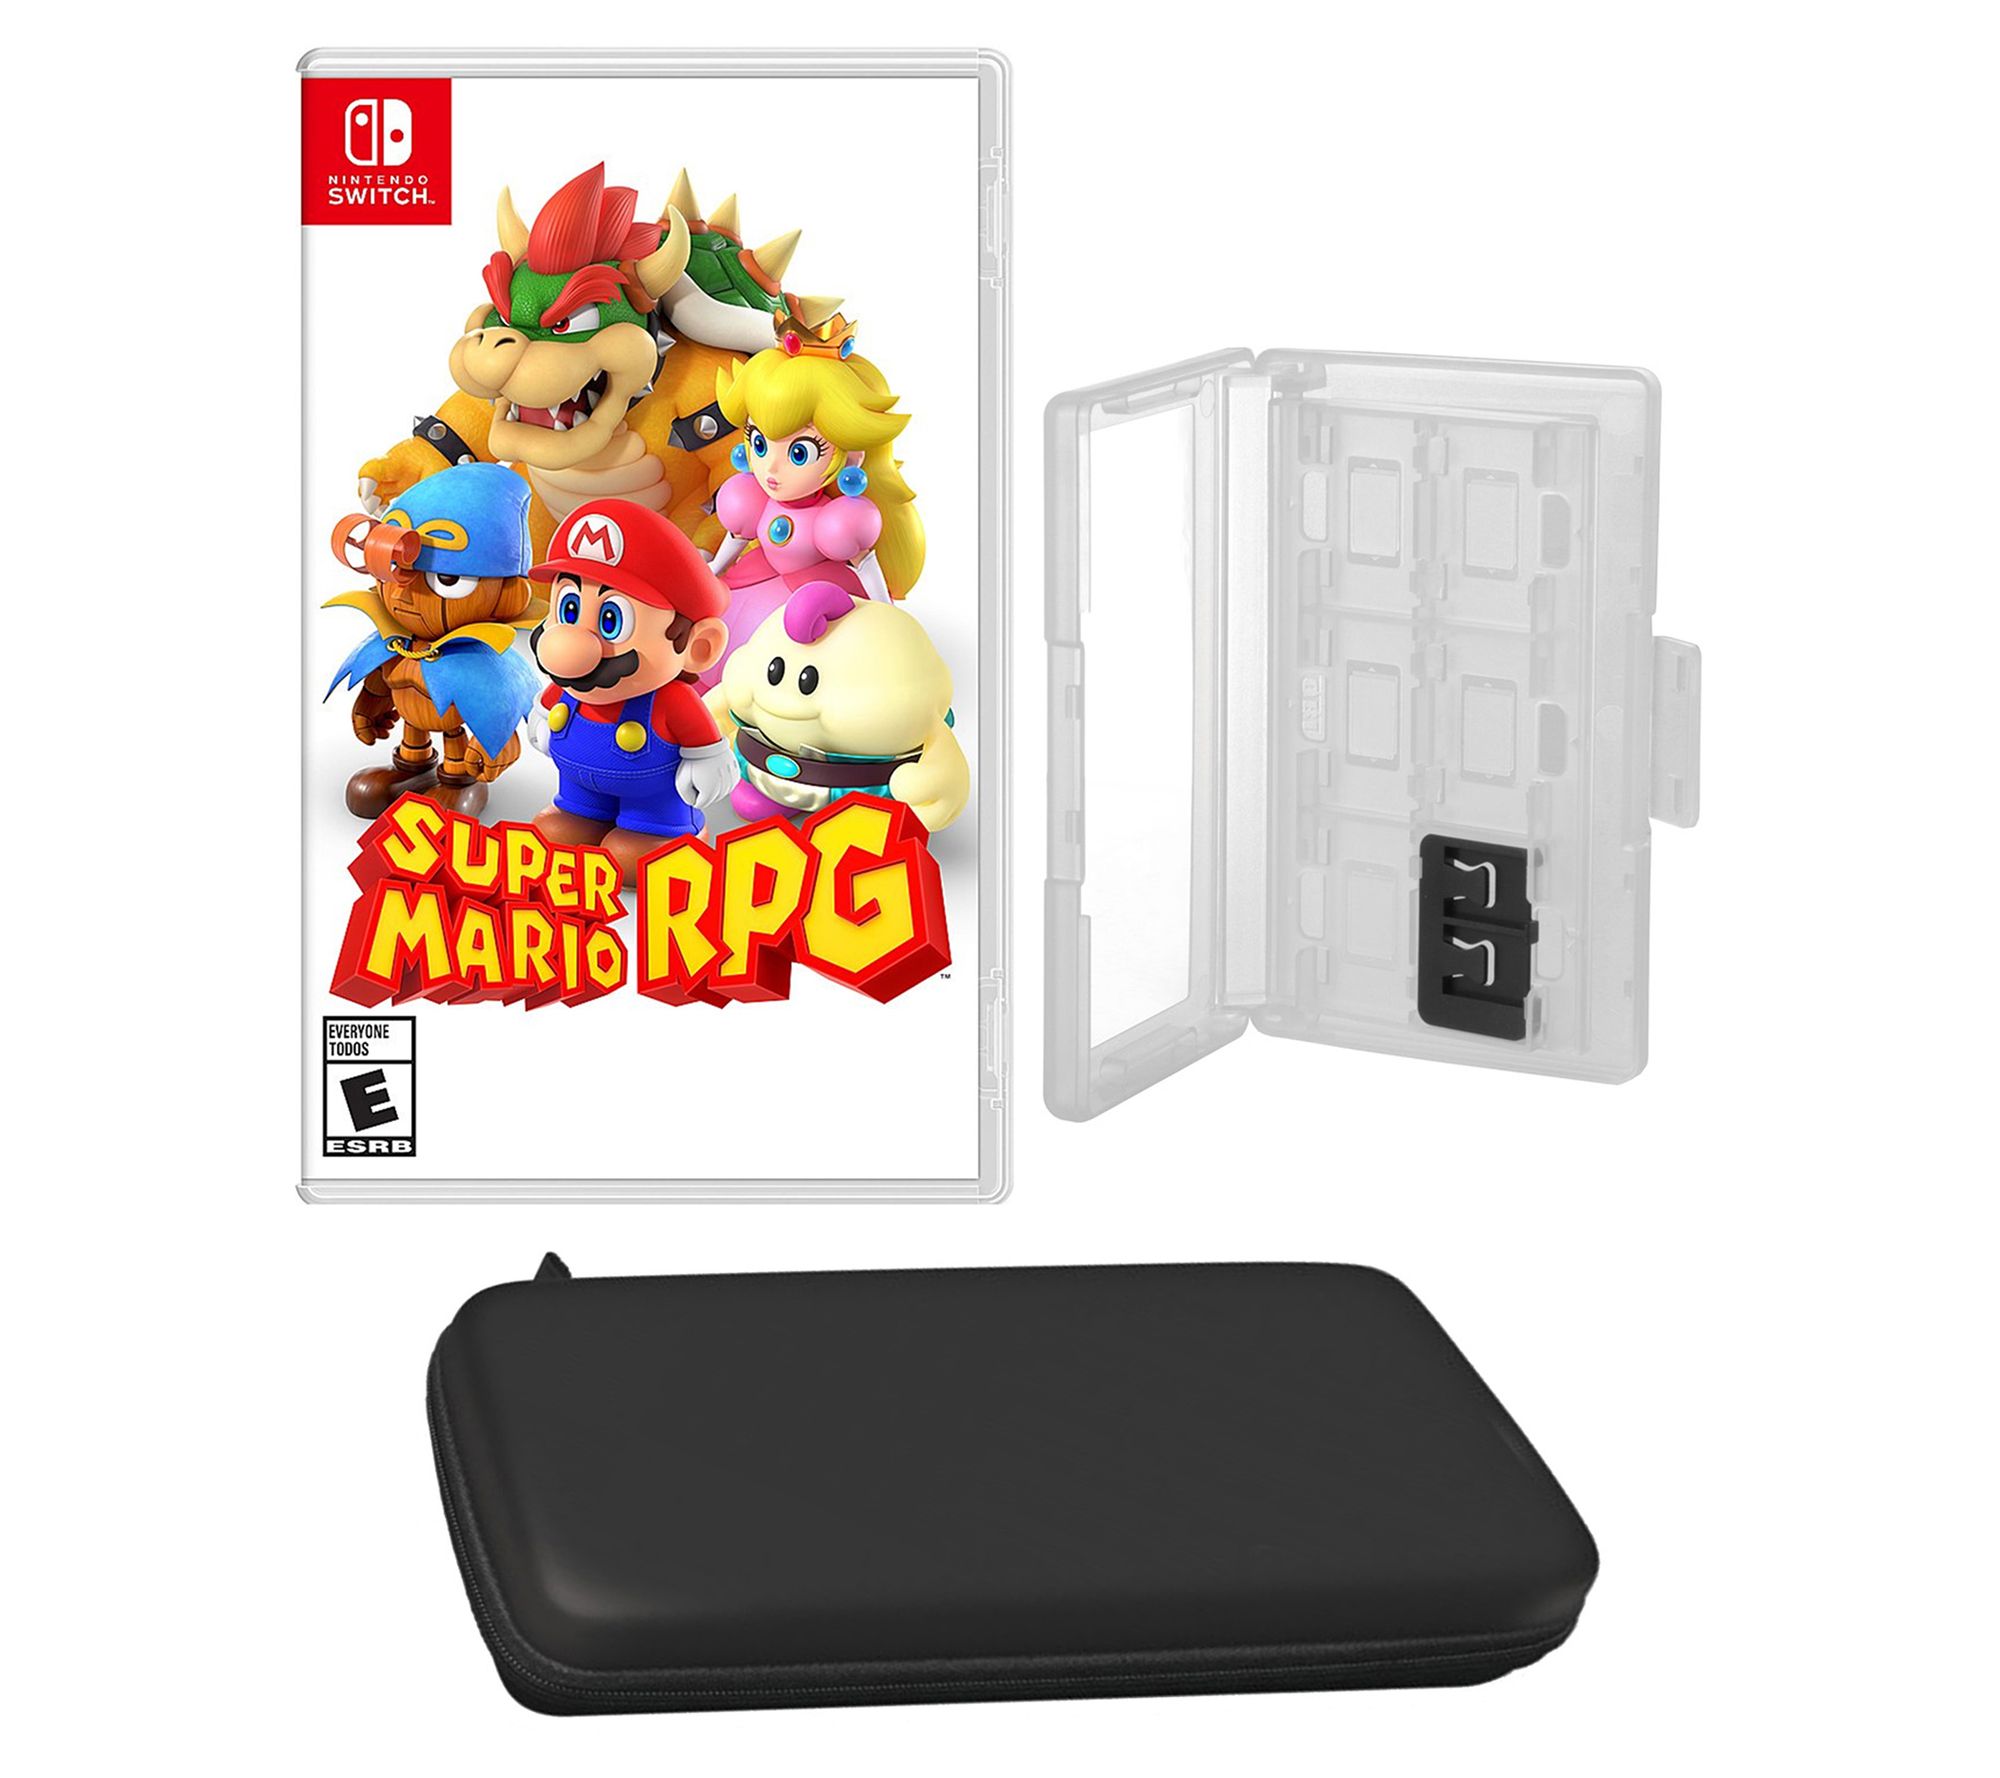 Defend the Kingdom  Aplicações de download da Nintendo Switch